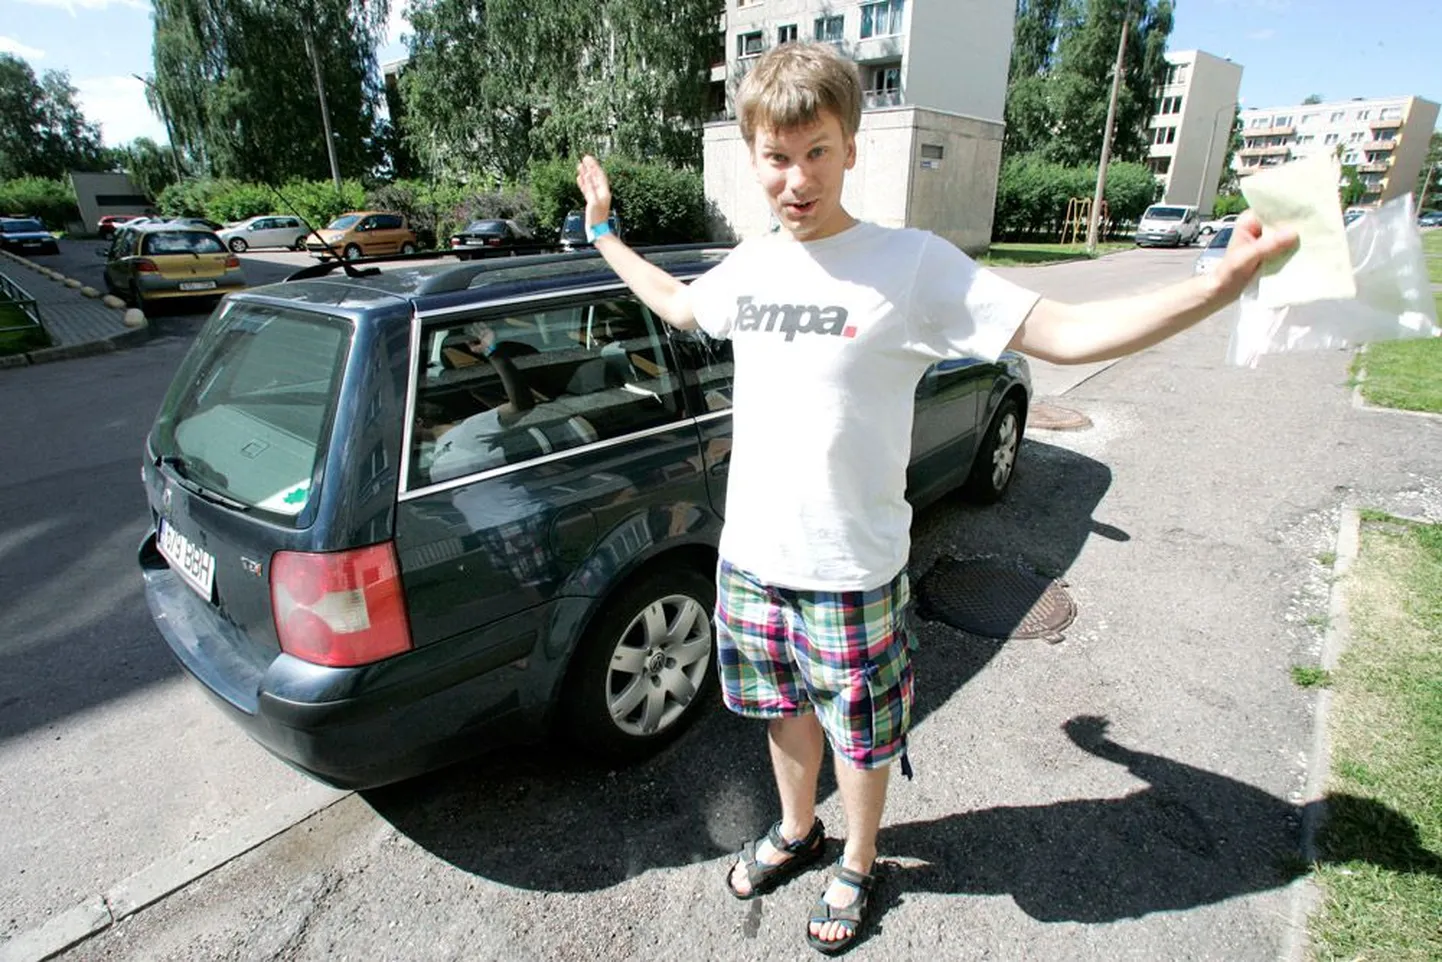 Õismäe elanik Olev Hannula on oma autot kodu ees juba aastaid niimoodi parkinud, kuid sel nädalal tehti talle selle eest esimest korda trahvi.